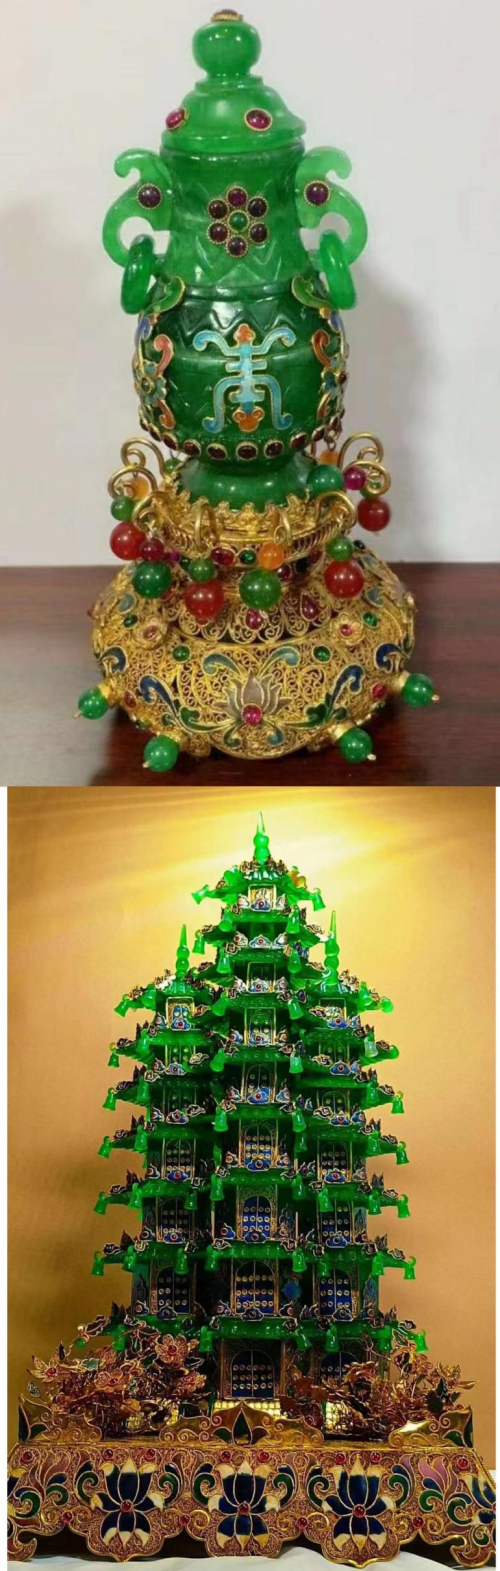 中国洪门五圣山91周年寿诞-中南文化网